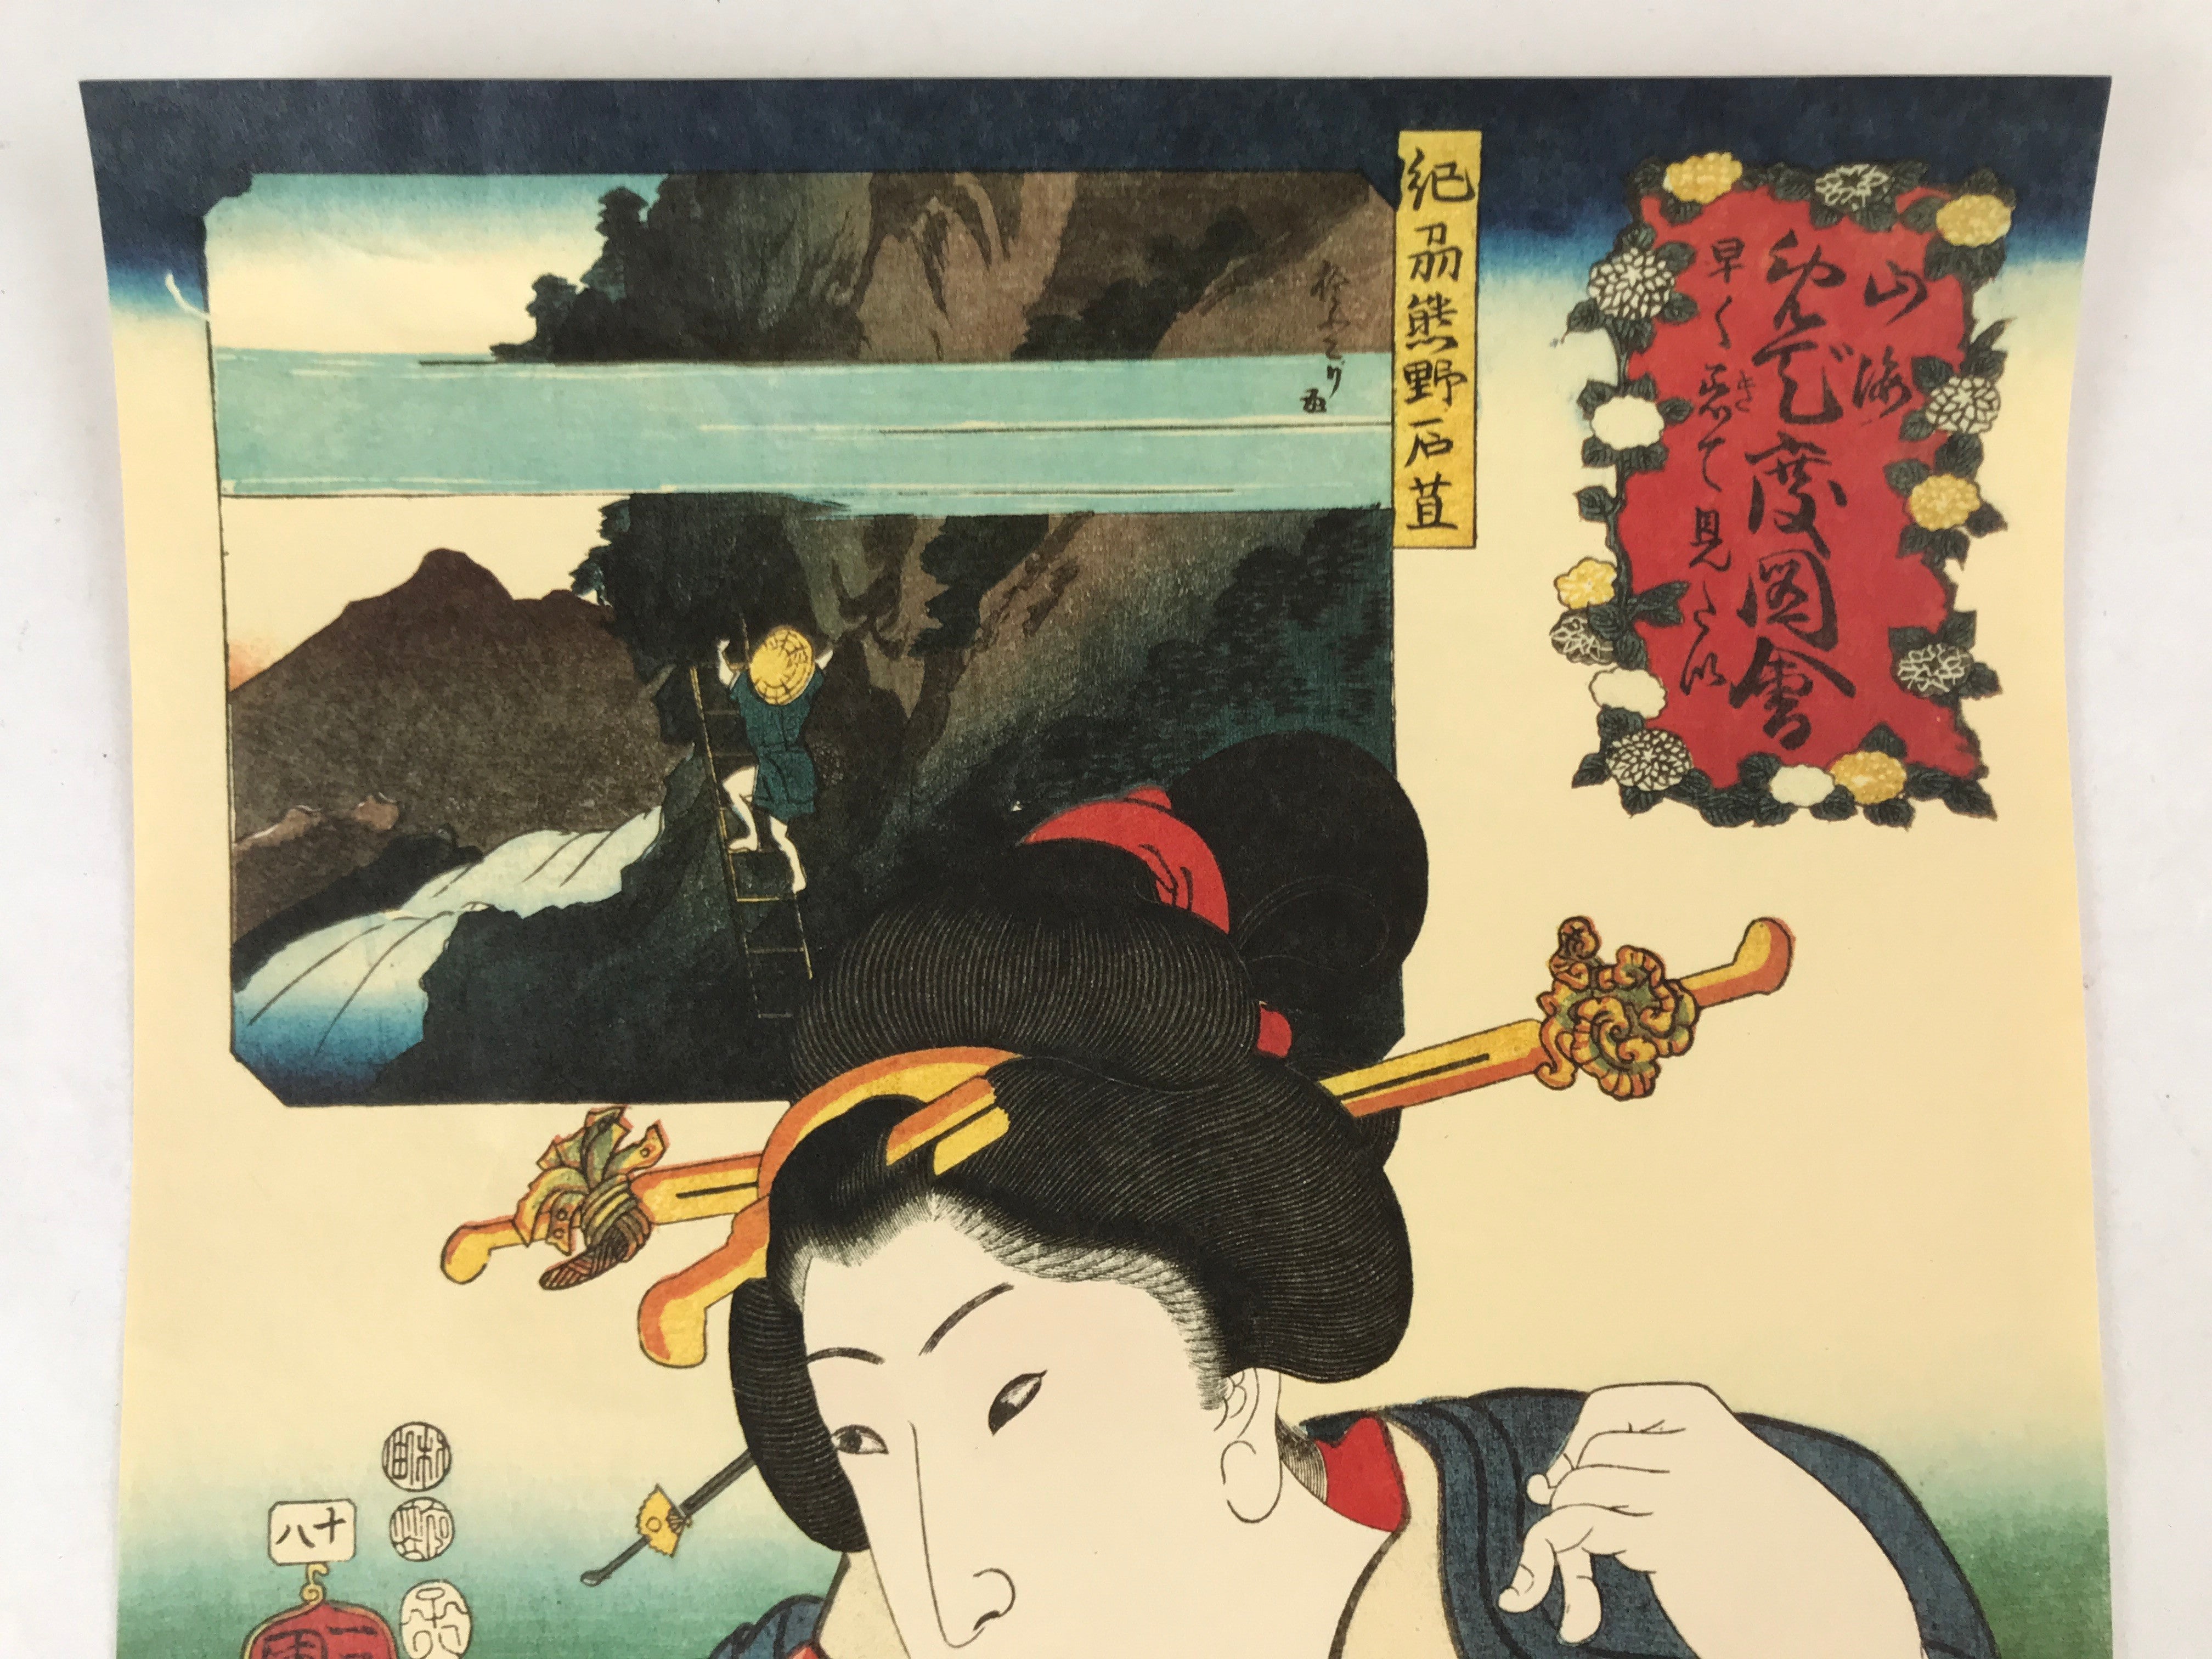 Japanese Ukiyoe Woodblock Print Reproduction Vtg Utagawa Kuniyoshi FL275